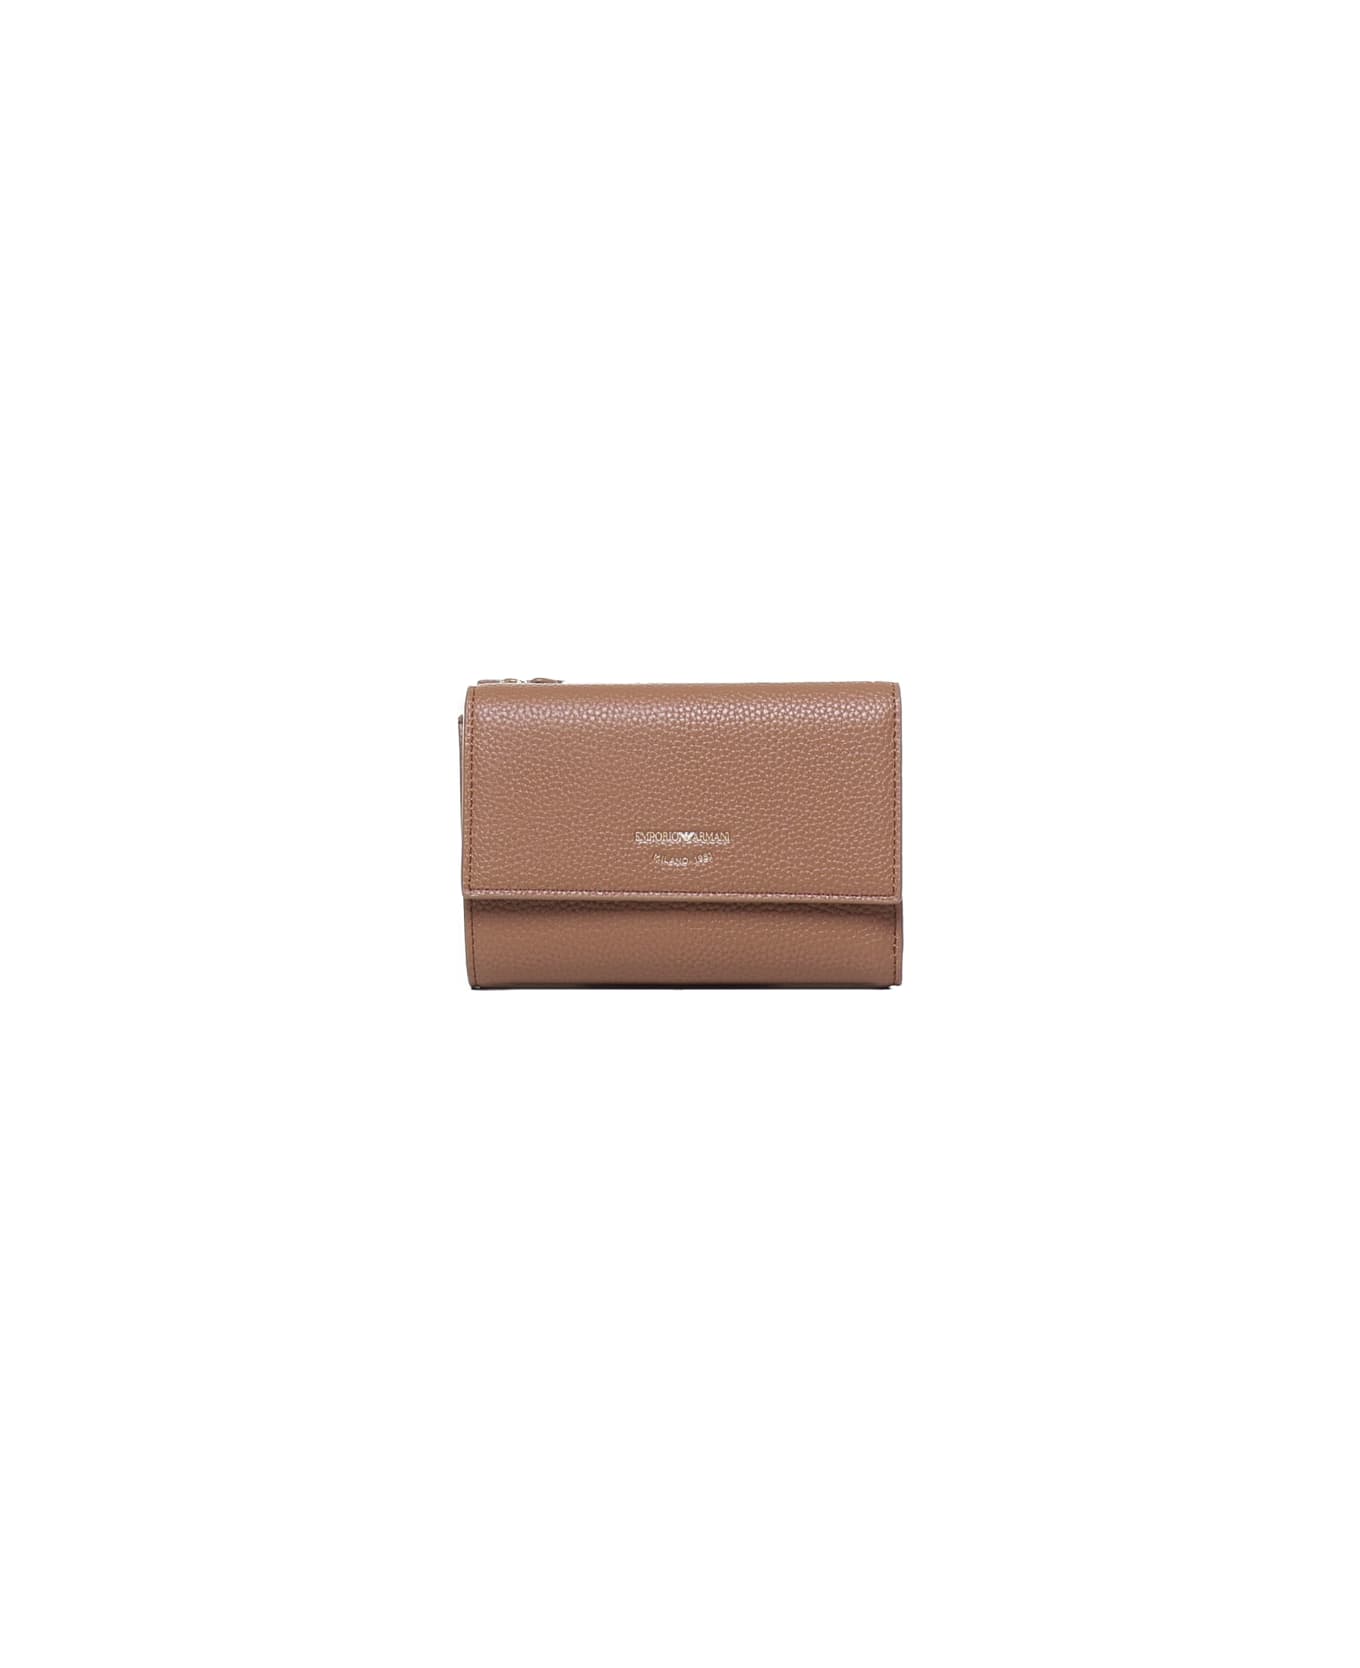 Giorgio Armani Wallet With Card Compartment And Magnetic Closure Giorgio Armani - BLACK 財布